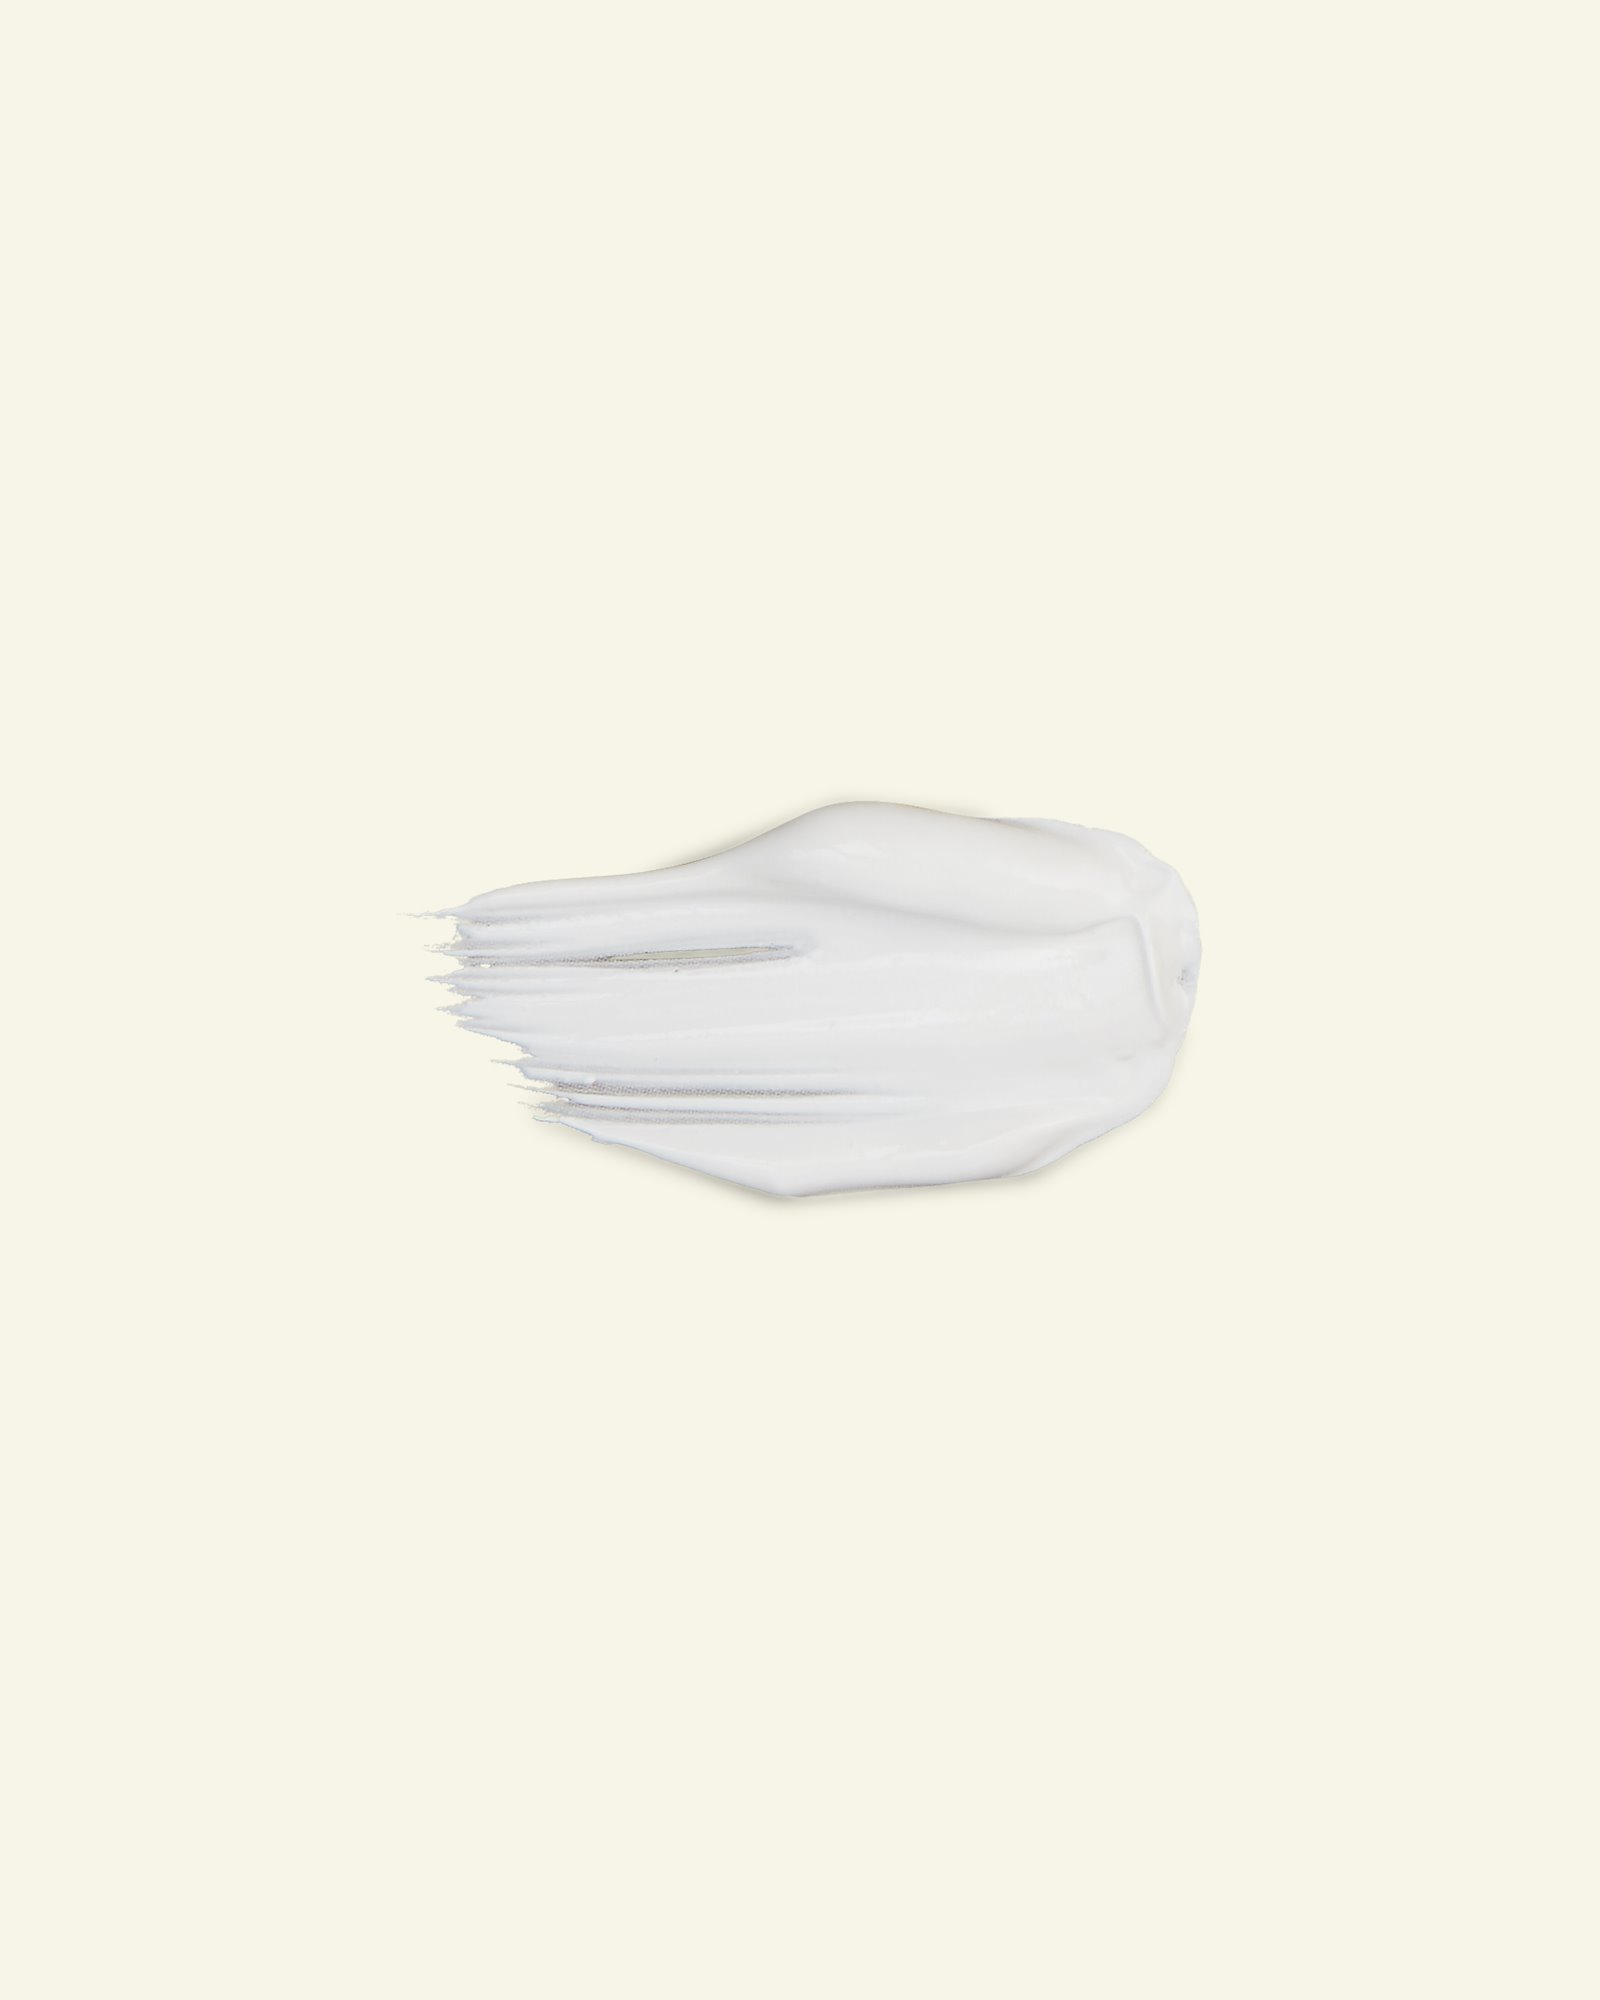 Javana textilfärg, täckande, vit, 50ml 29570_pack